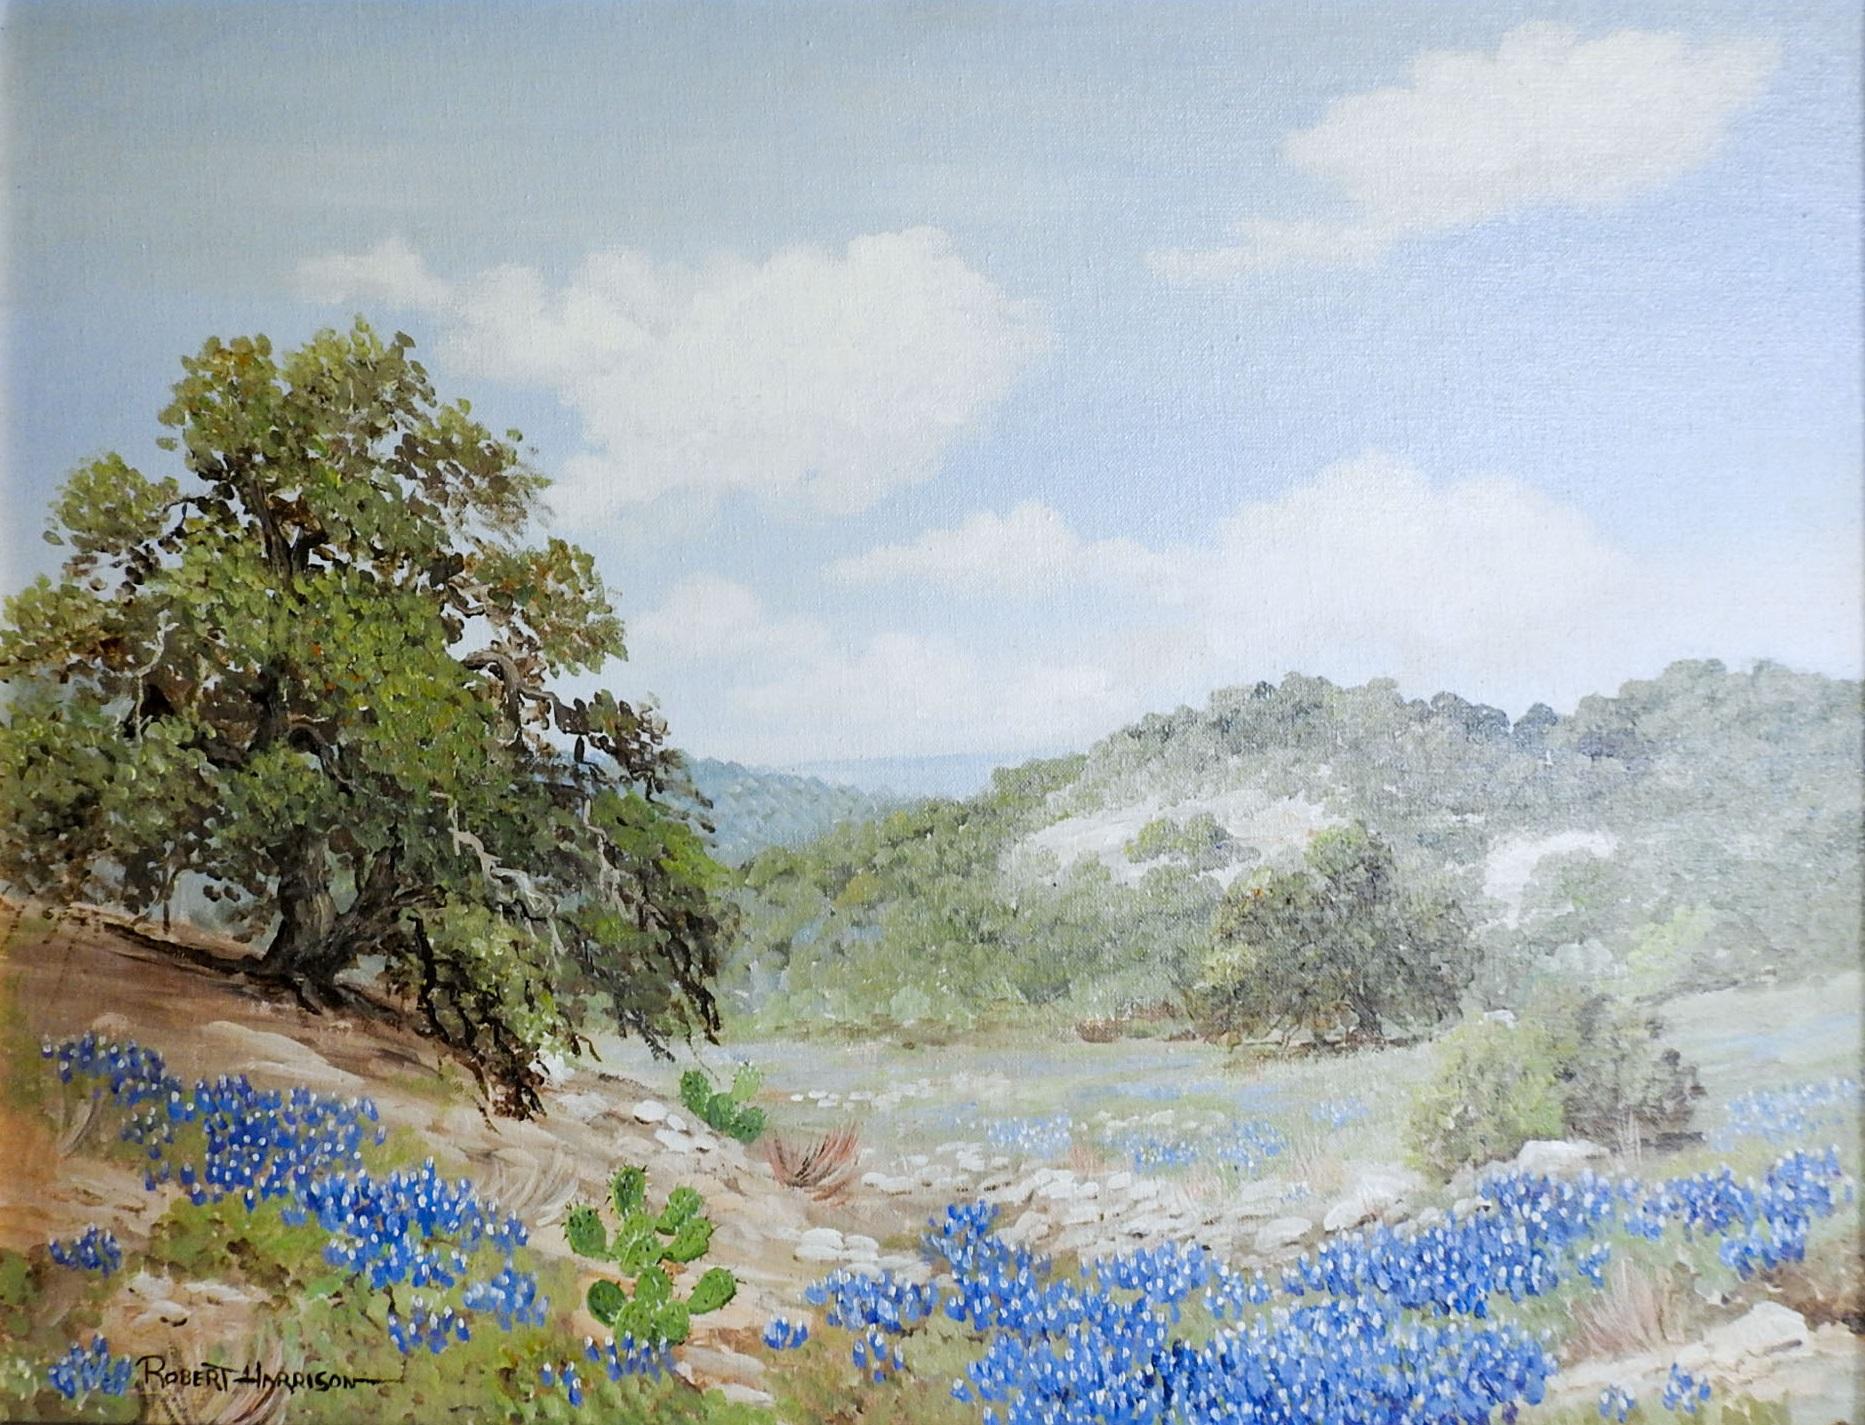 Rustic Robert Harrison Bluebonnet Landscape Painting For Sale